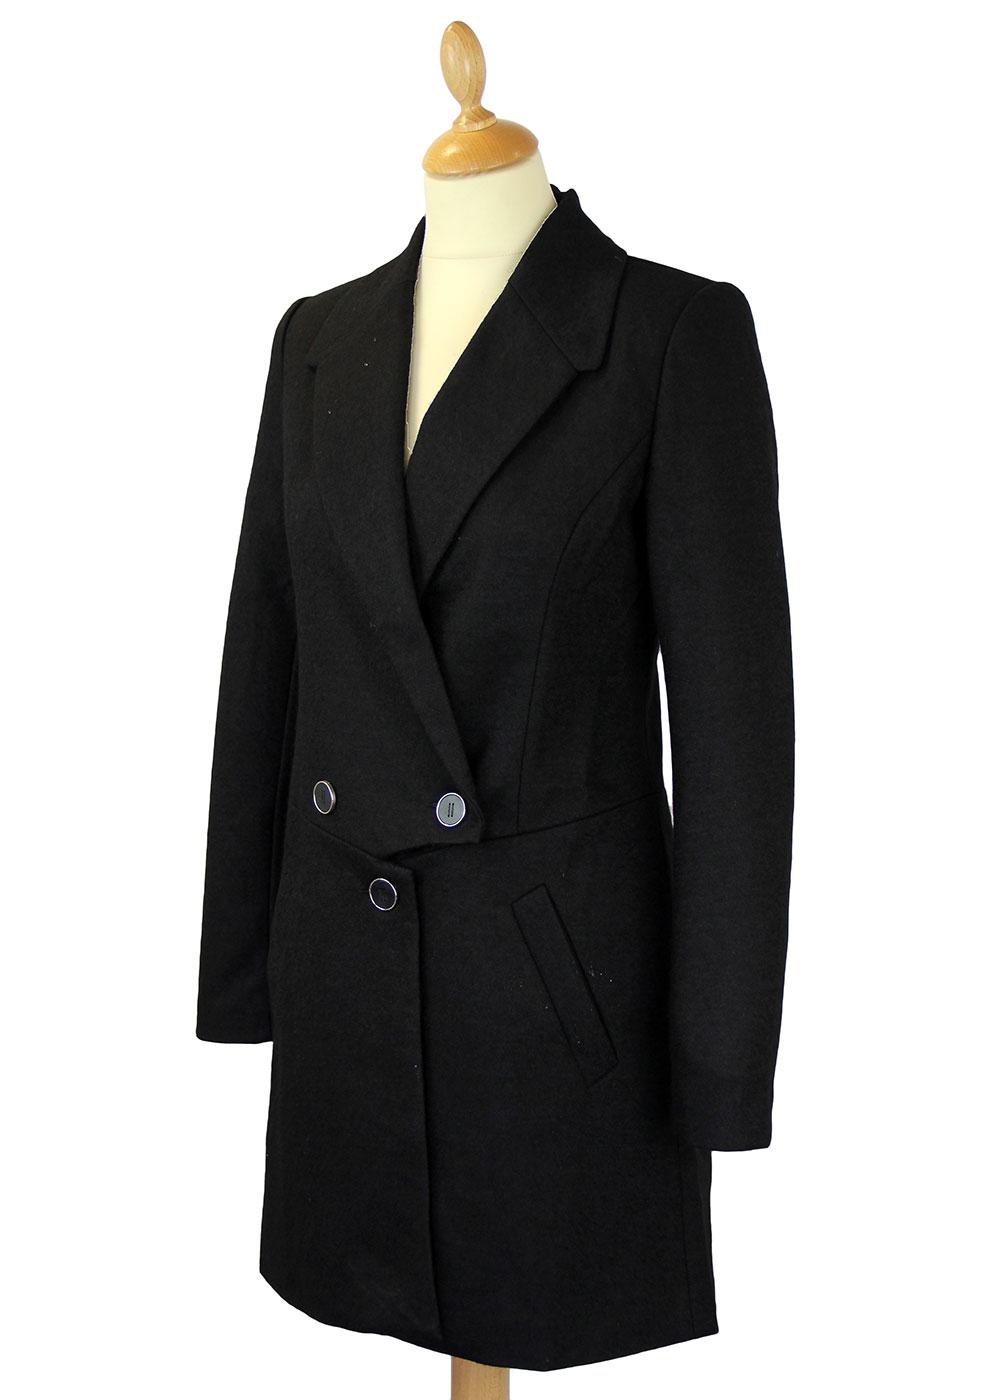 TRAFFIC PEOPLE Retro 1950s Vintage Top N Tails Coat in Black